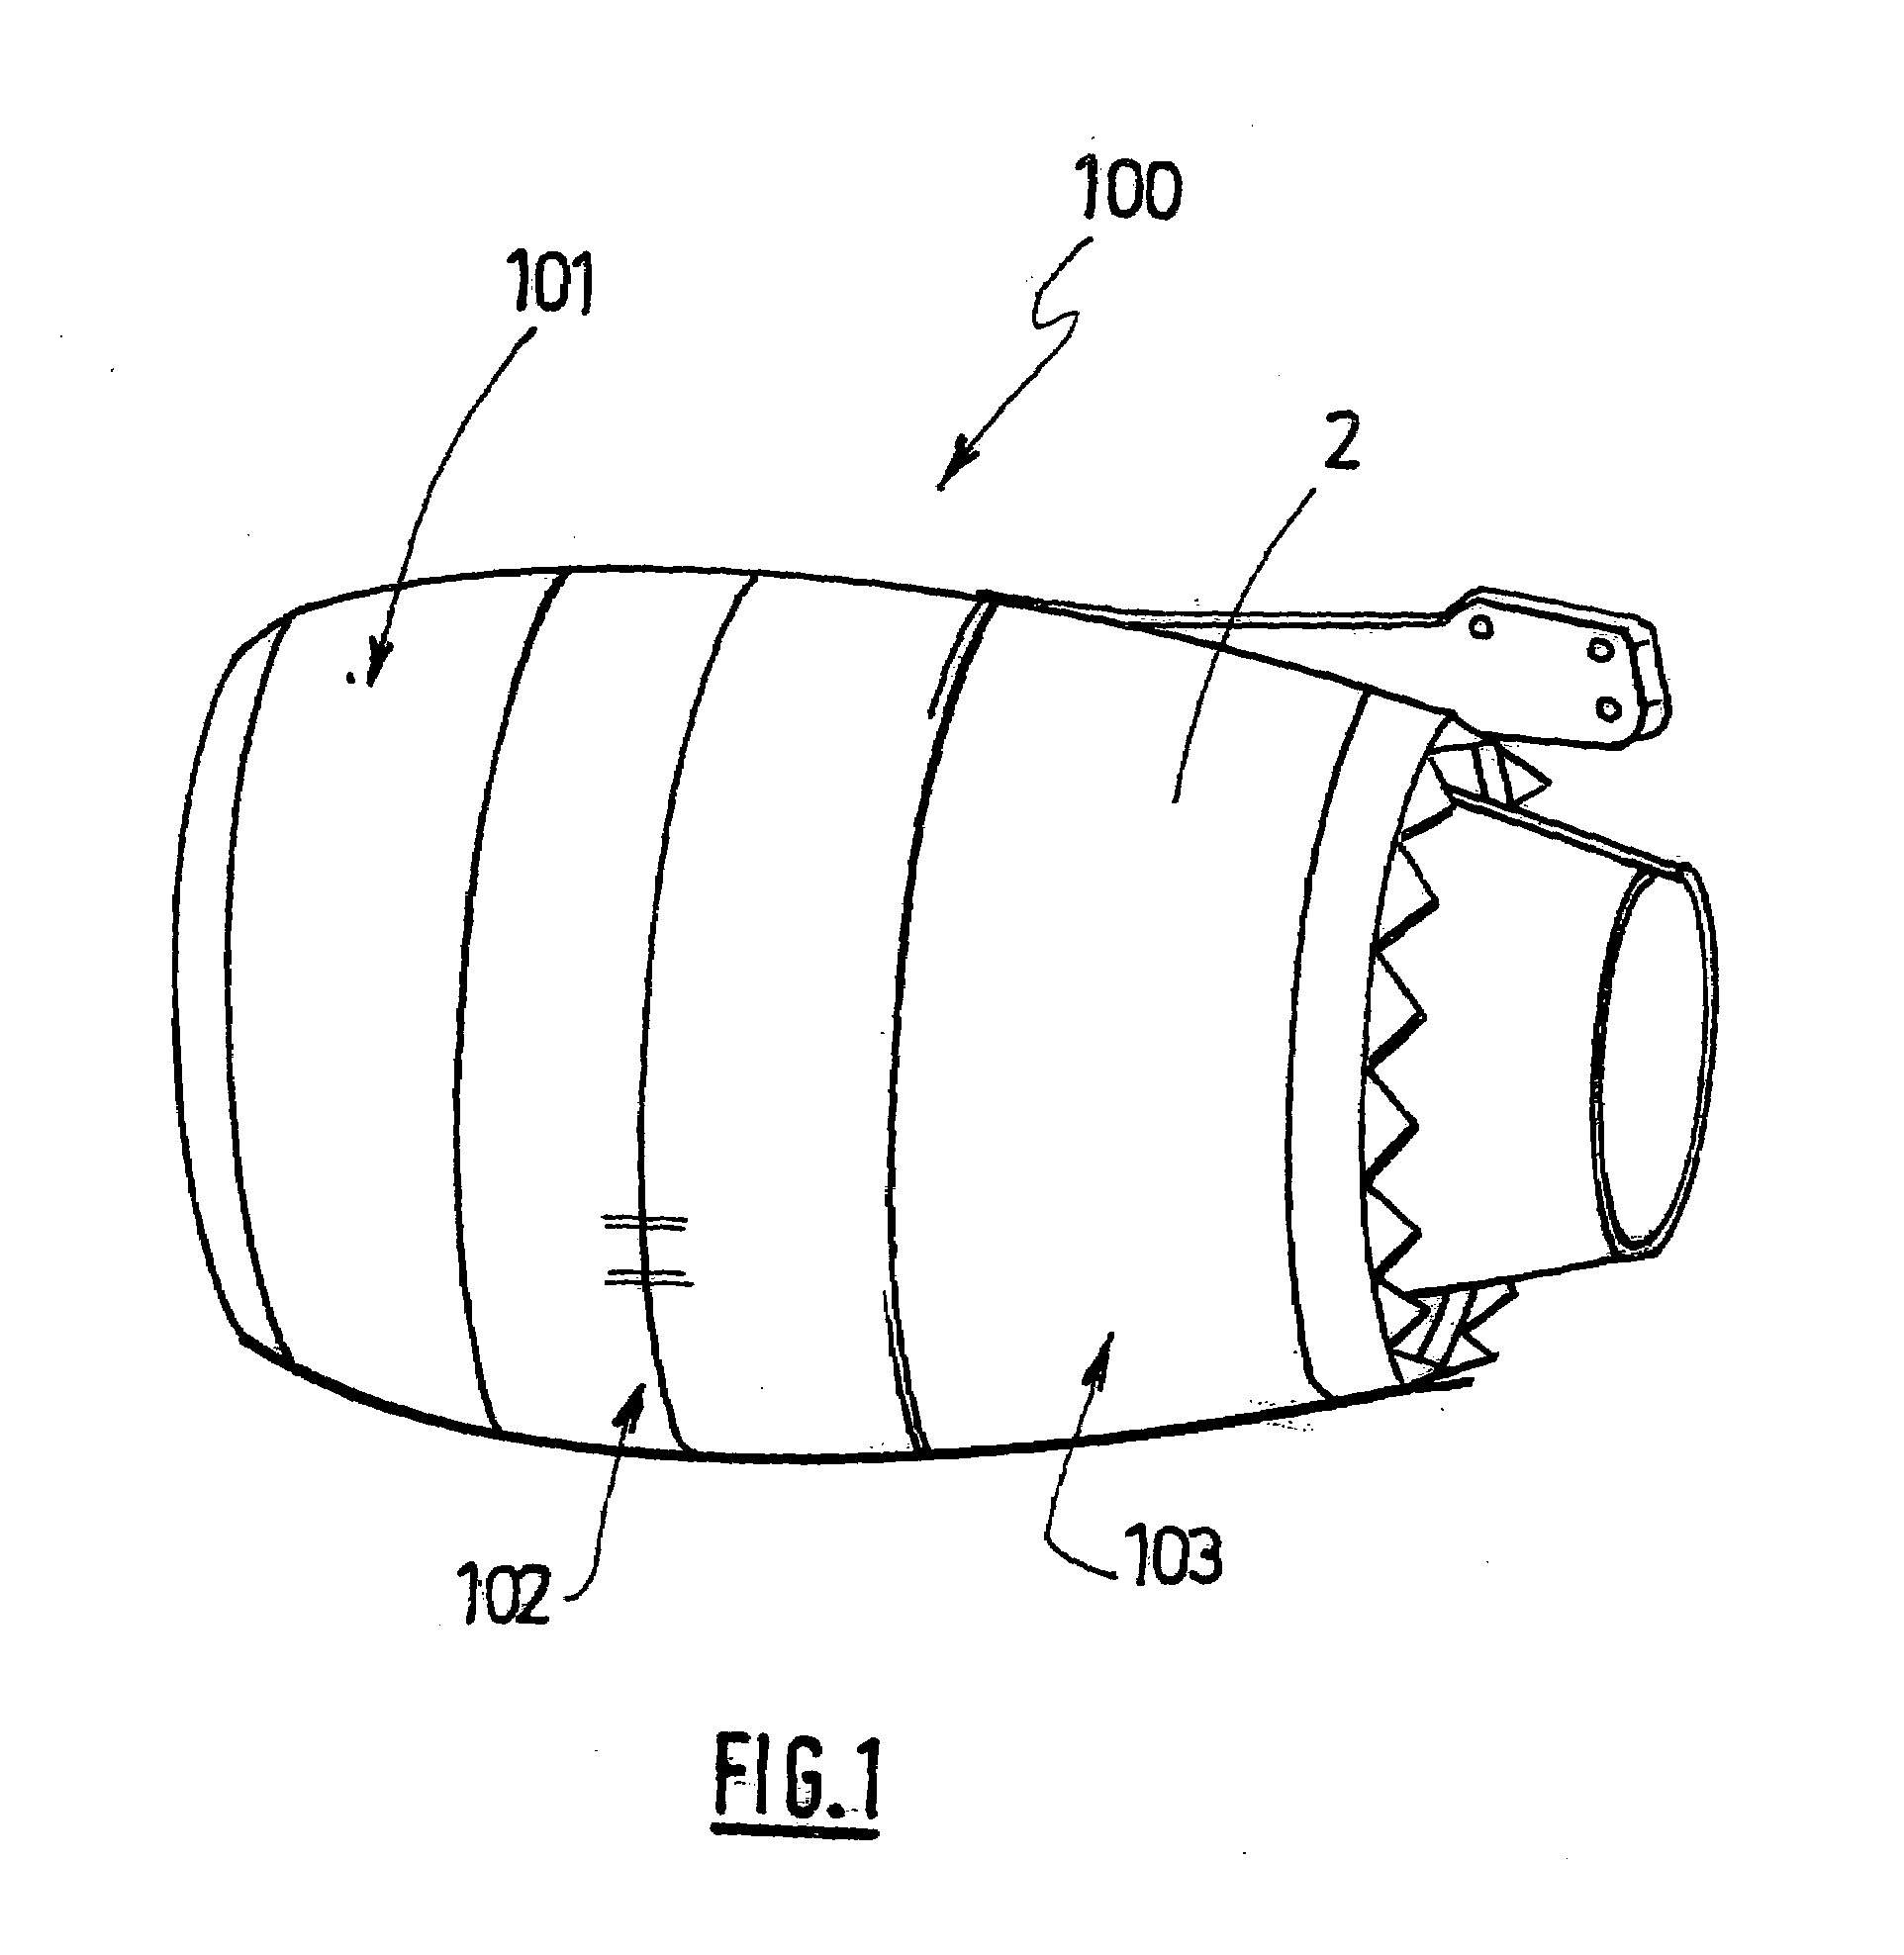 Translatable thrust inverter for jet engine